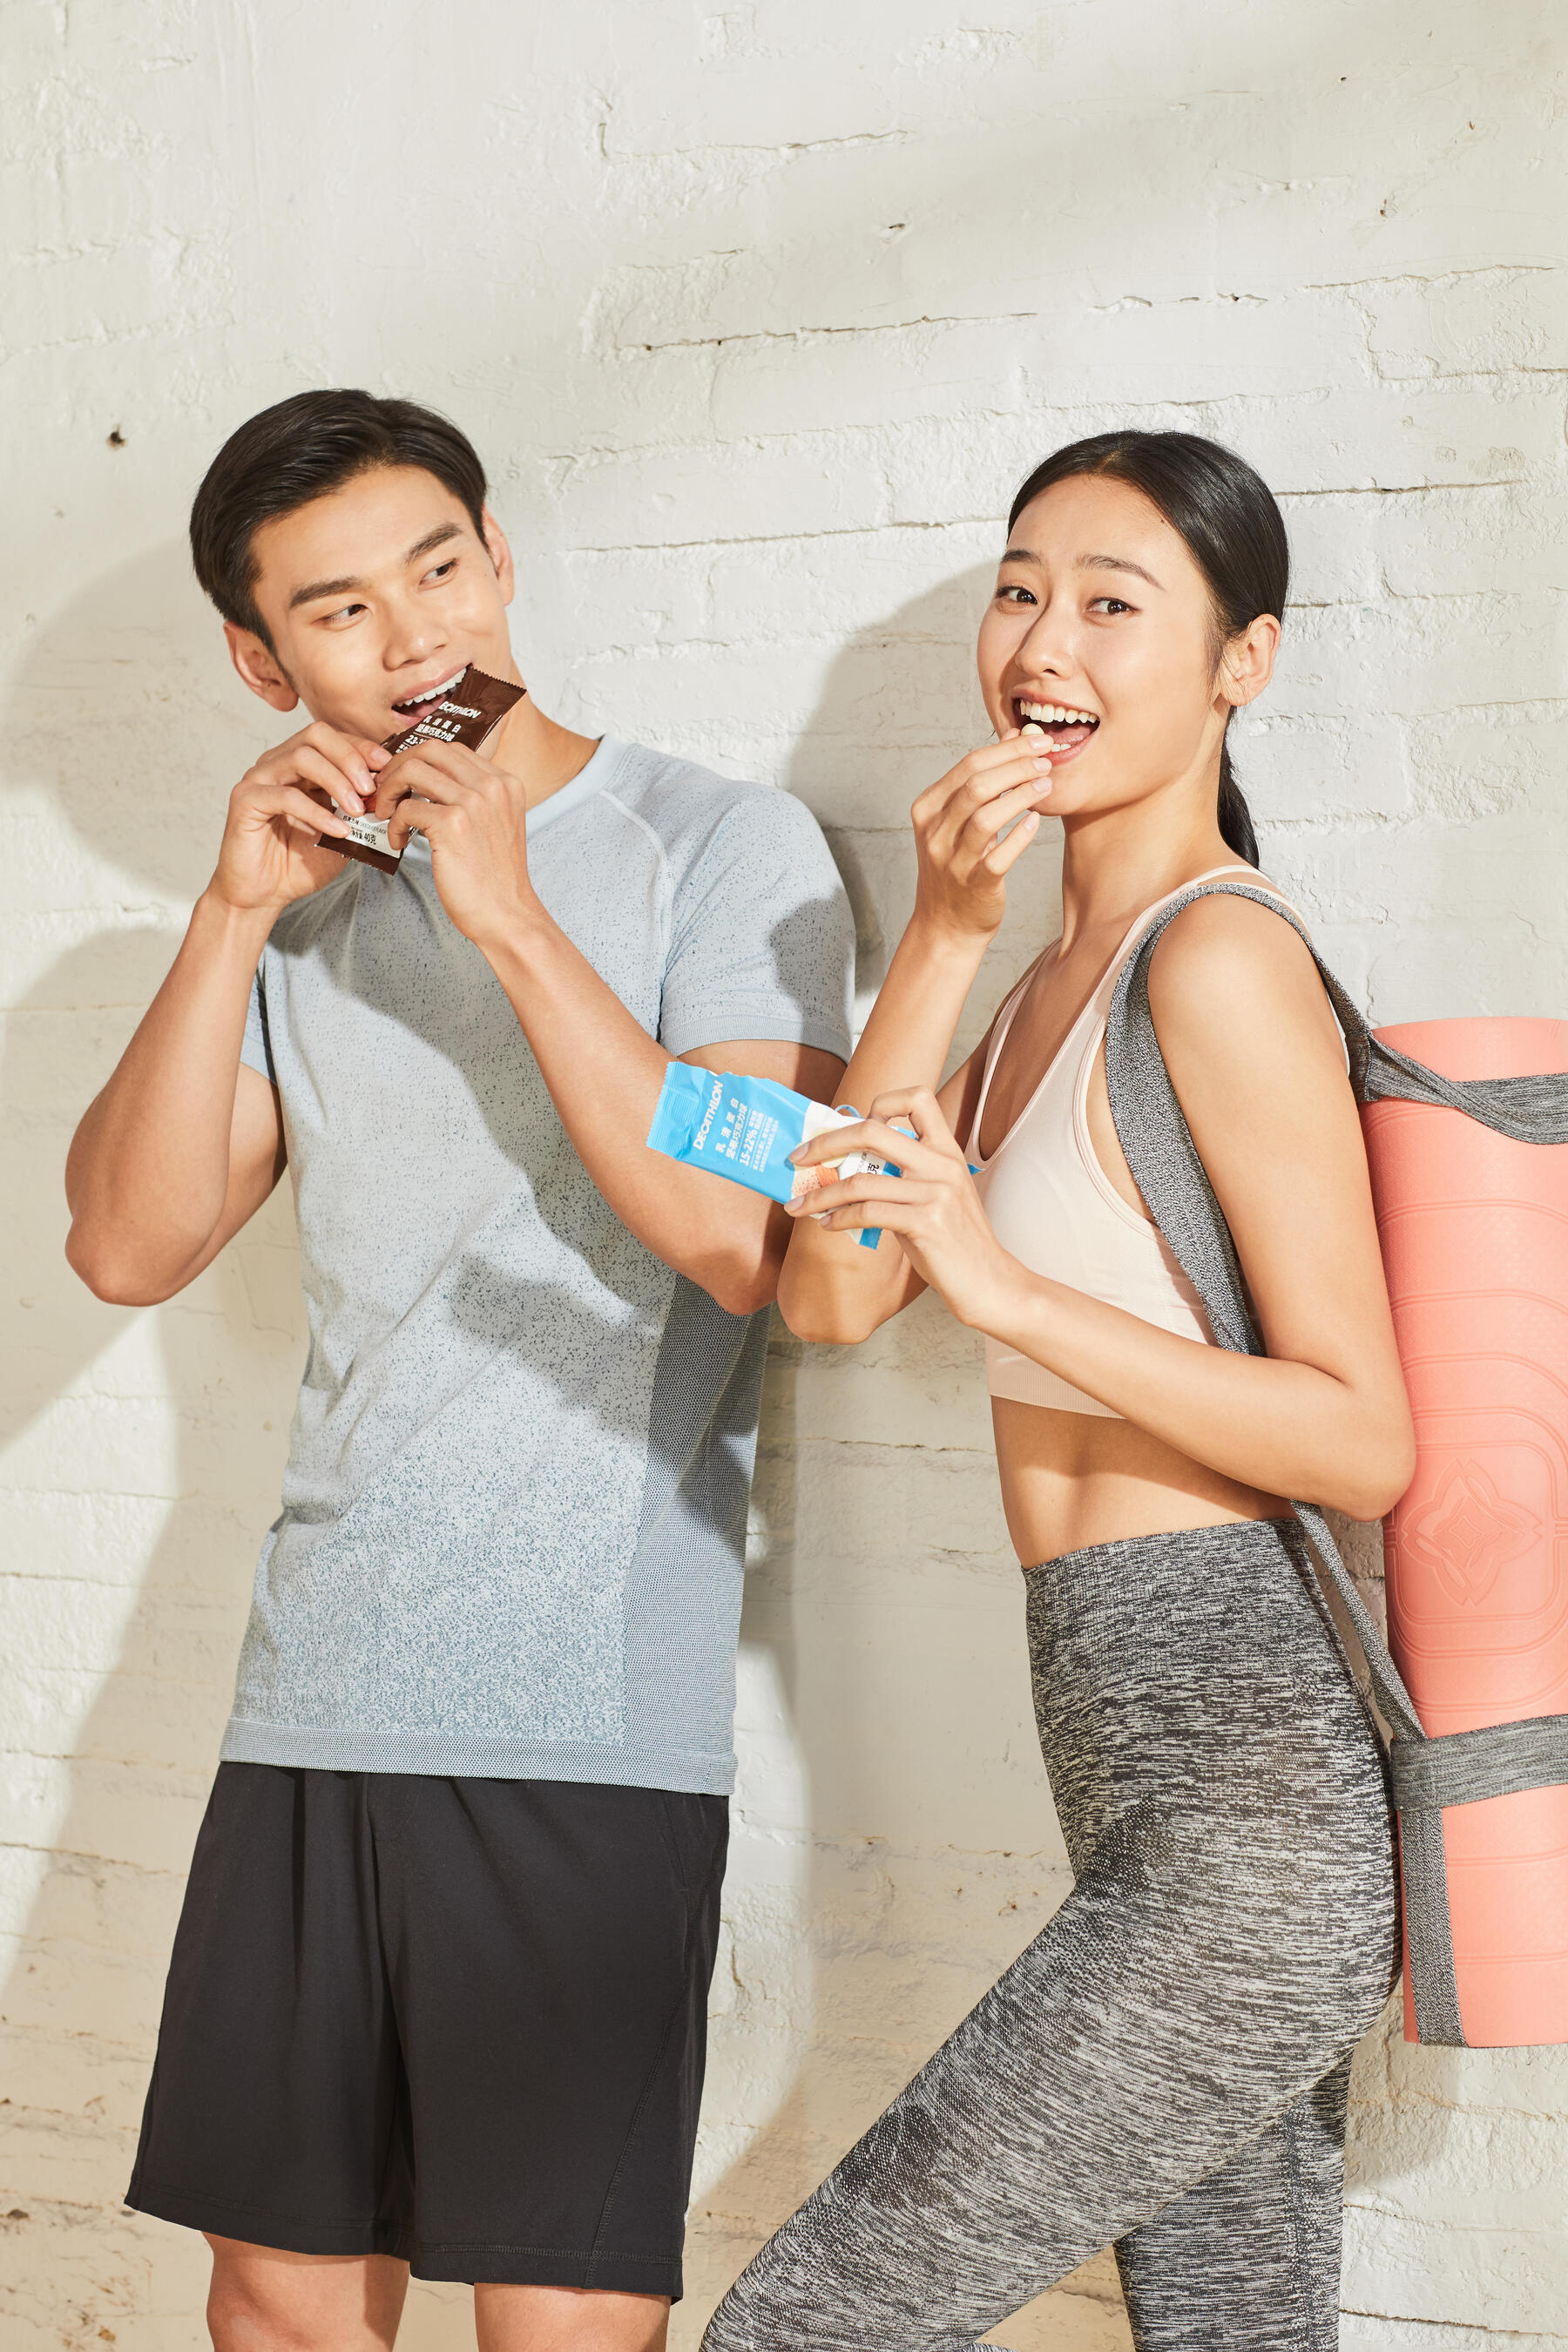 Kobieta i mężczyzna jedzący batonika po treningu unikając restrykcyjnej diet